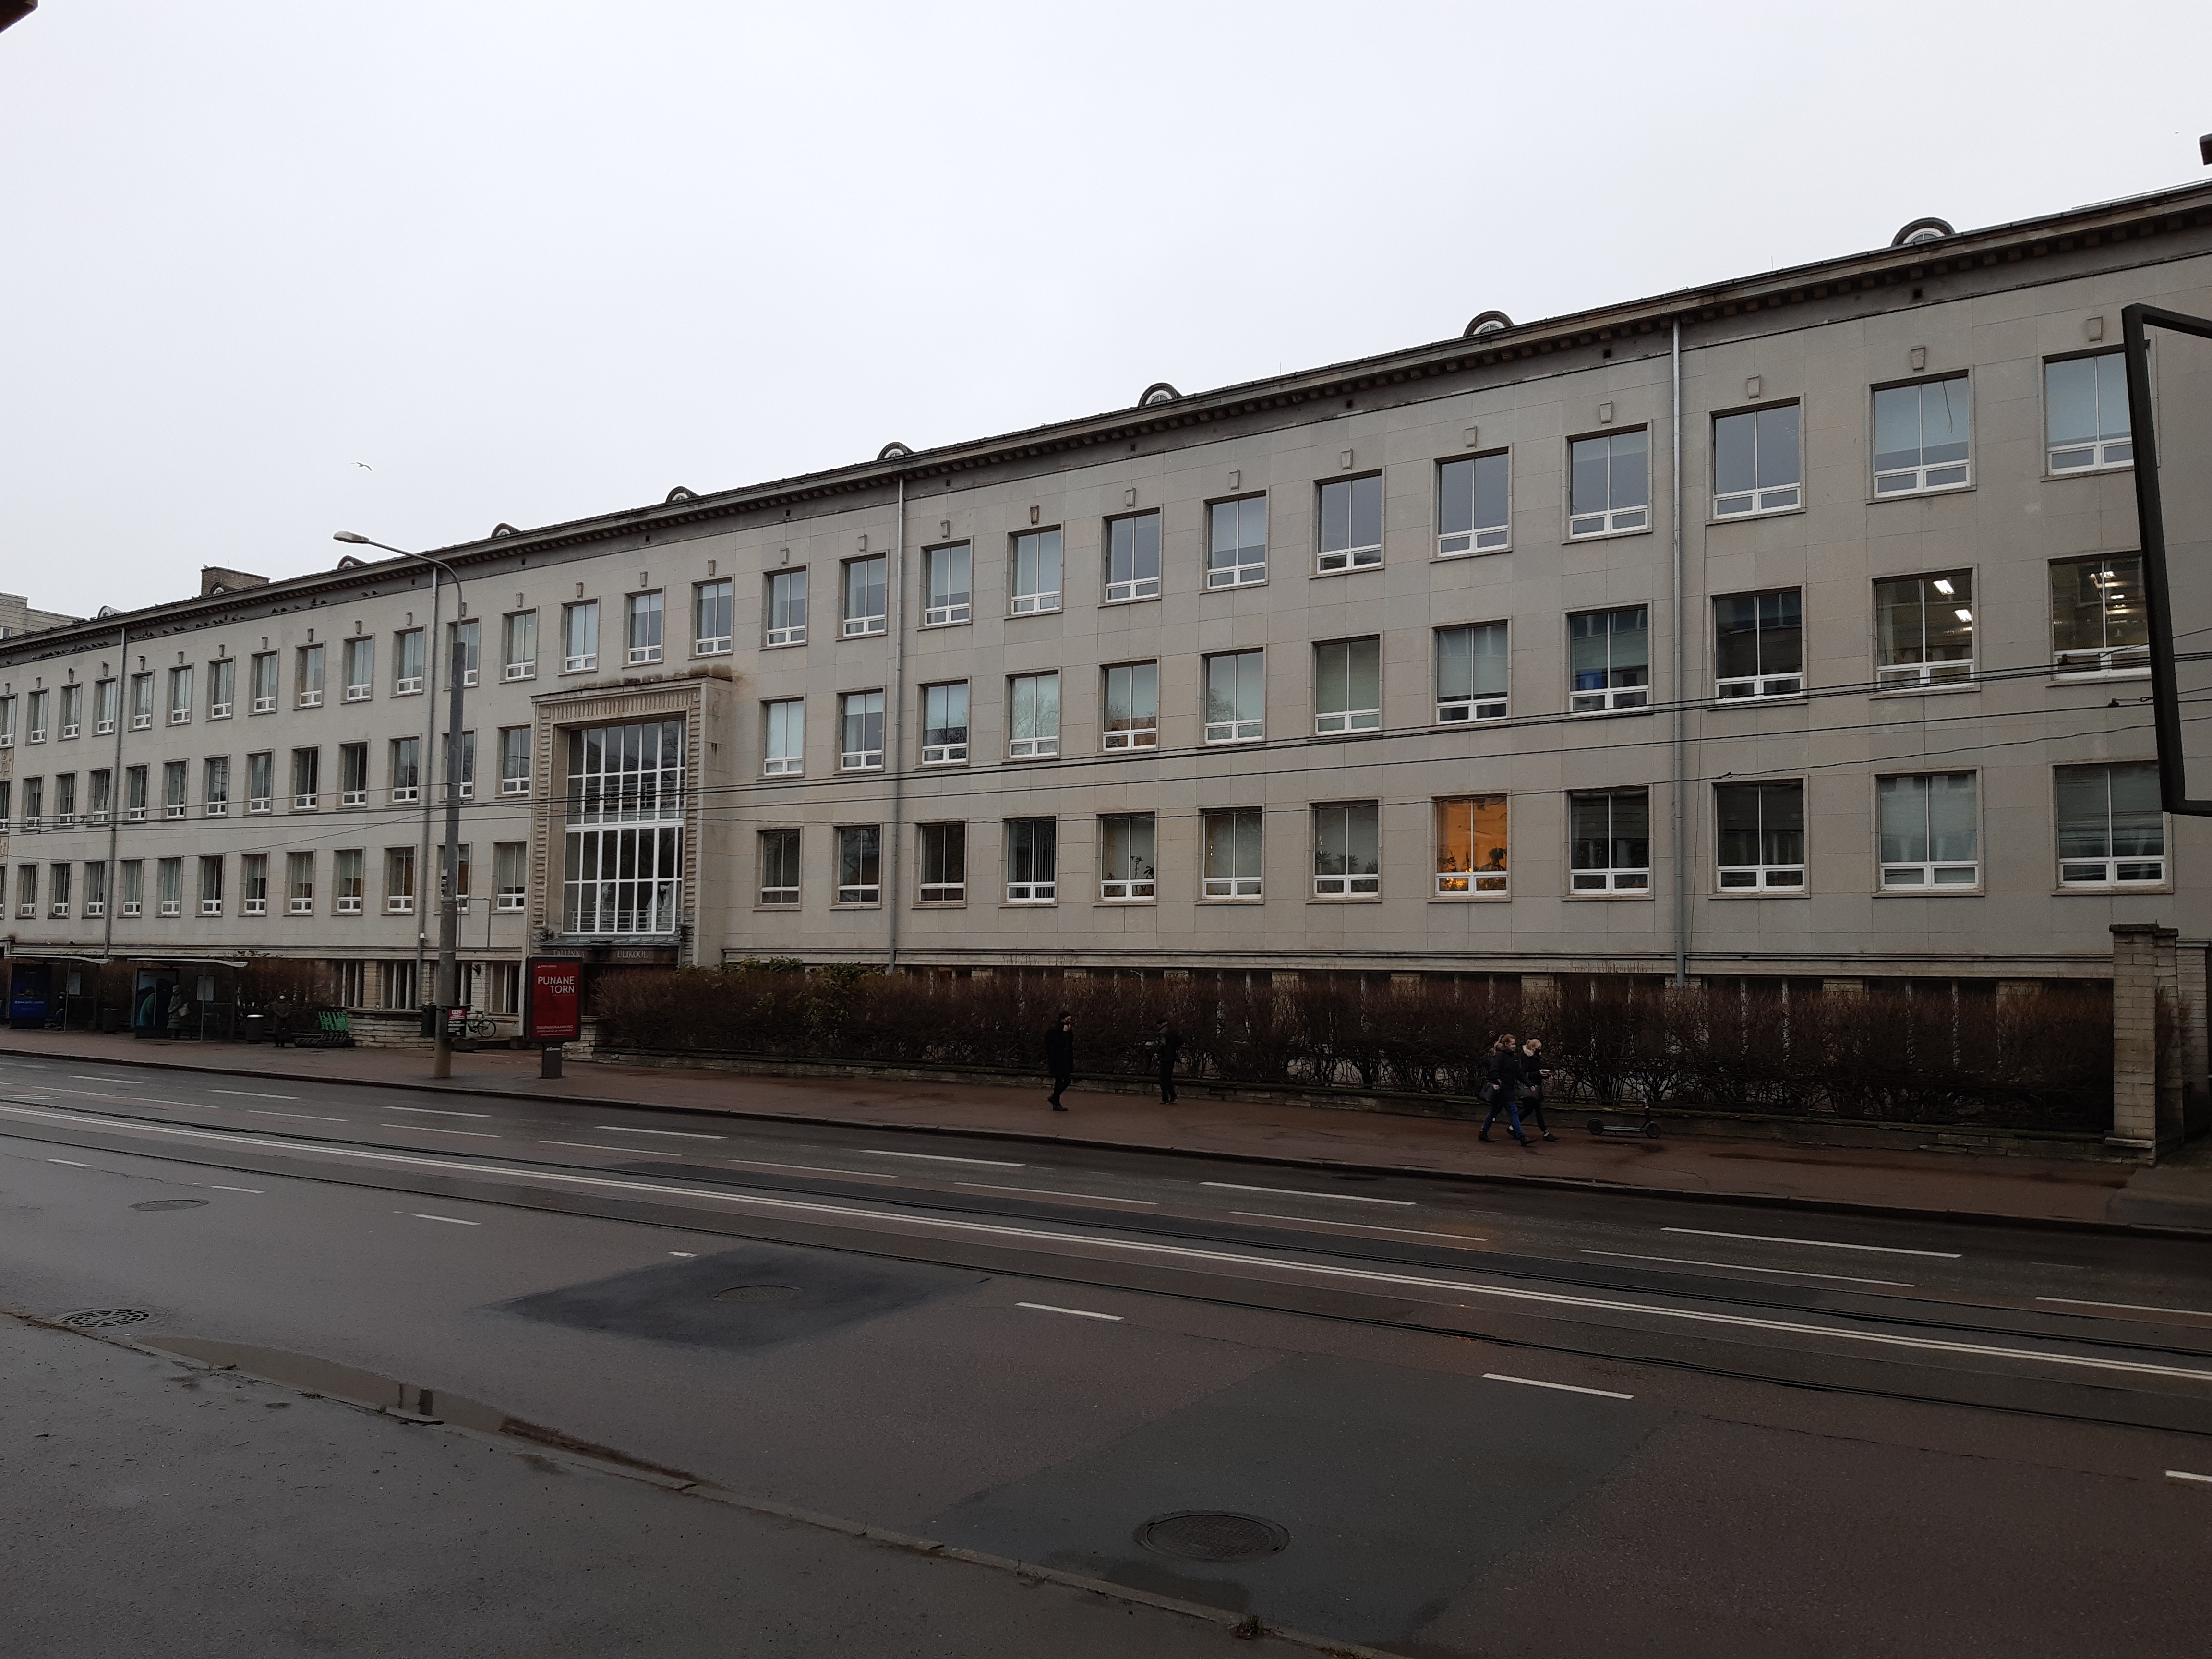 Koolimaja Tallinnas, endine Riiklik Kolledž, fassaadivaade. Arhitektid Alar Kotli, Erika Nõva rephoto